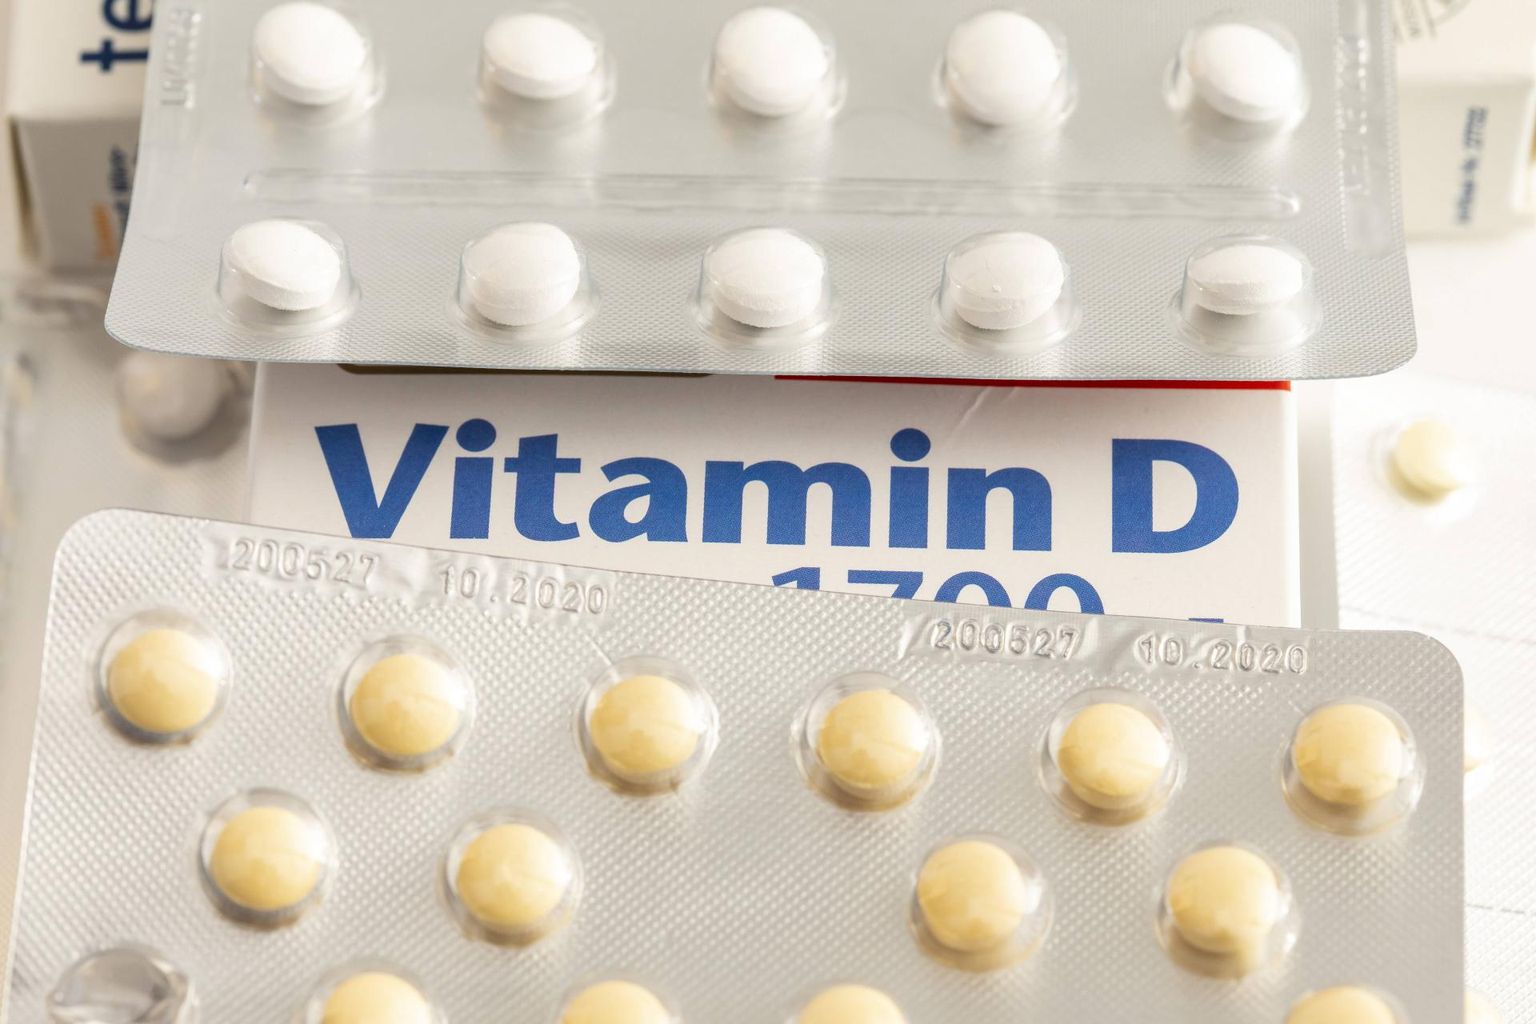 D-vitamiini puuduse all kannatavatel inimestel võib Covid-19 kulgeda raskemini ja lõppeda halvemini.